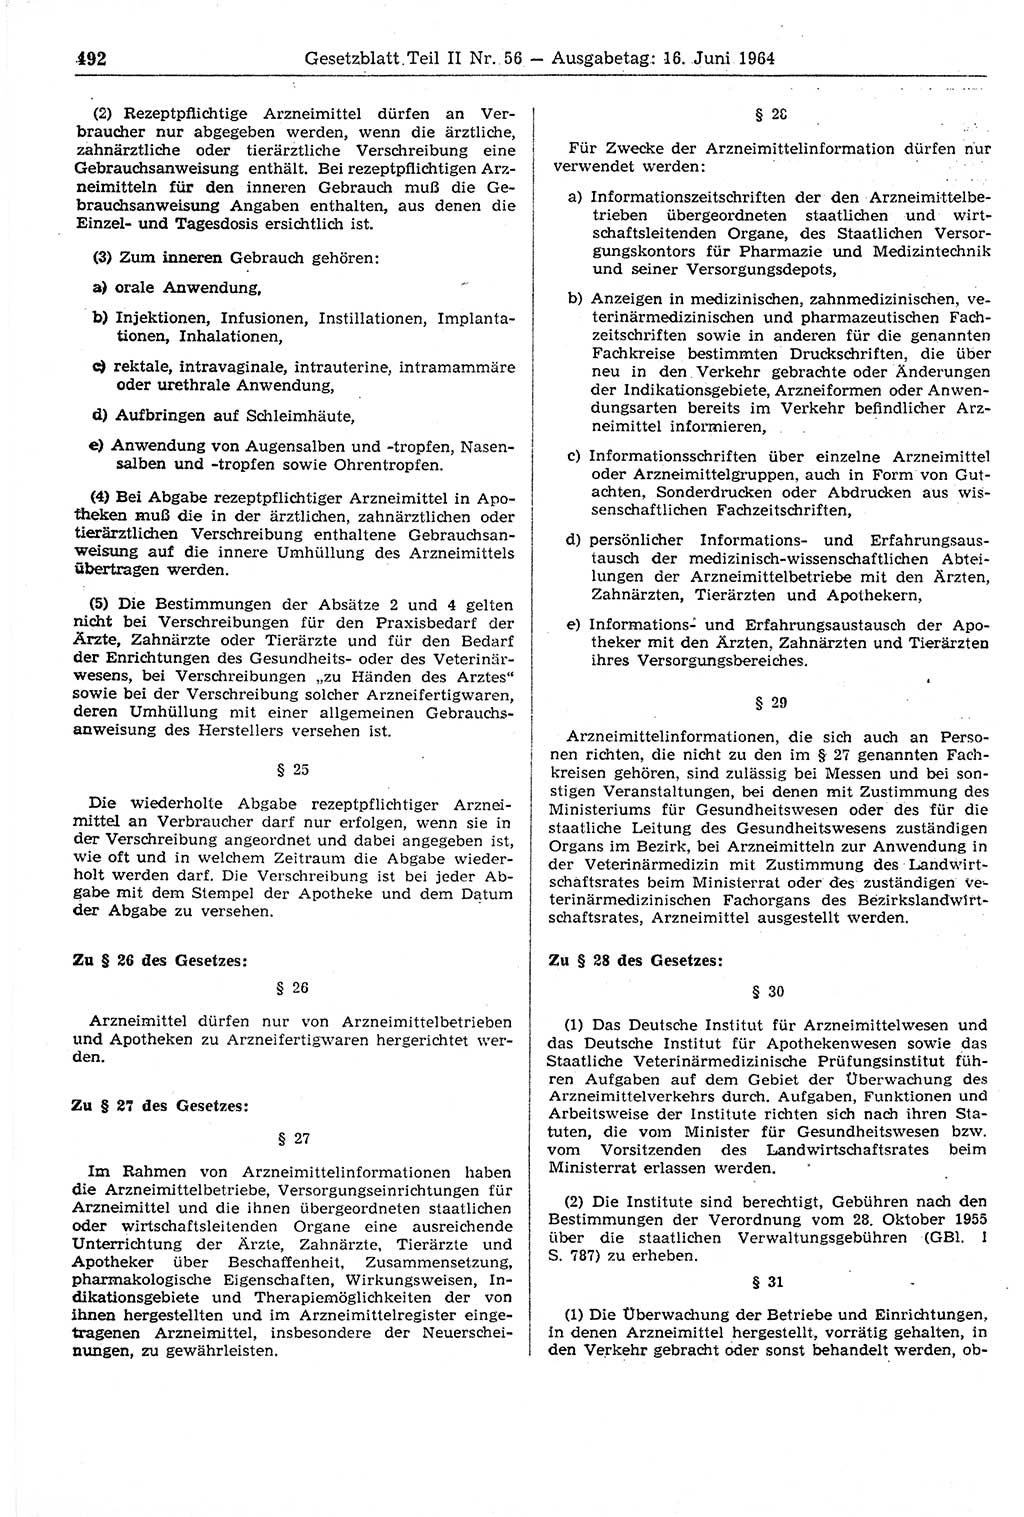 Gesetzblatt (GBl.) der Deutschen Demokratischen Republik (DDR) Teil ⅠⅠ 1964, Seite 492 (GBl. DDR ⅠⅠ 1964, S. 492)